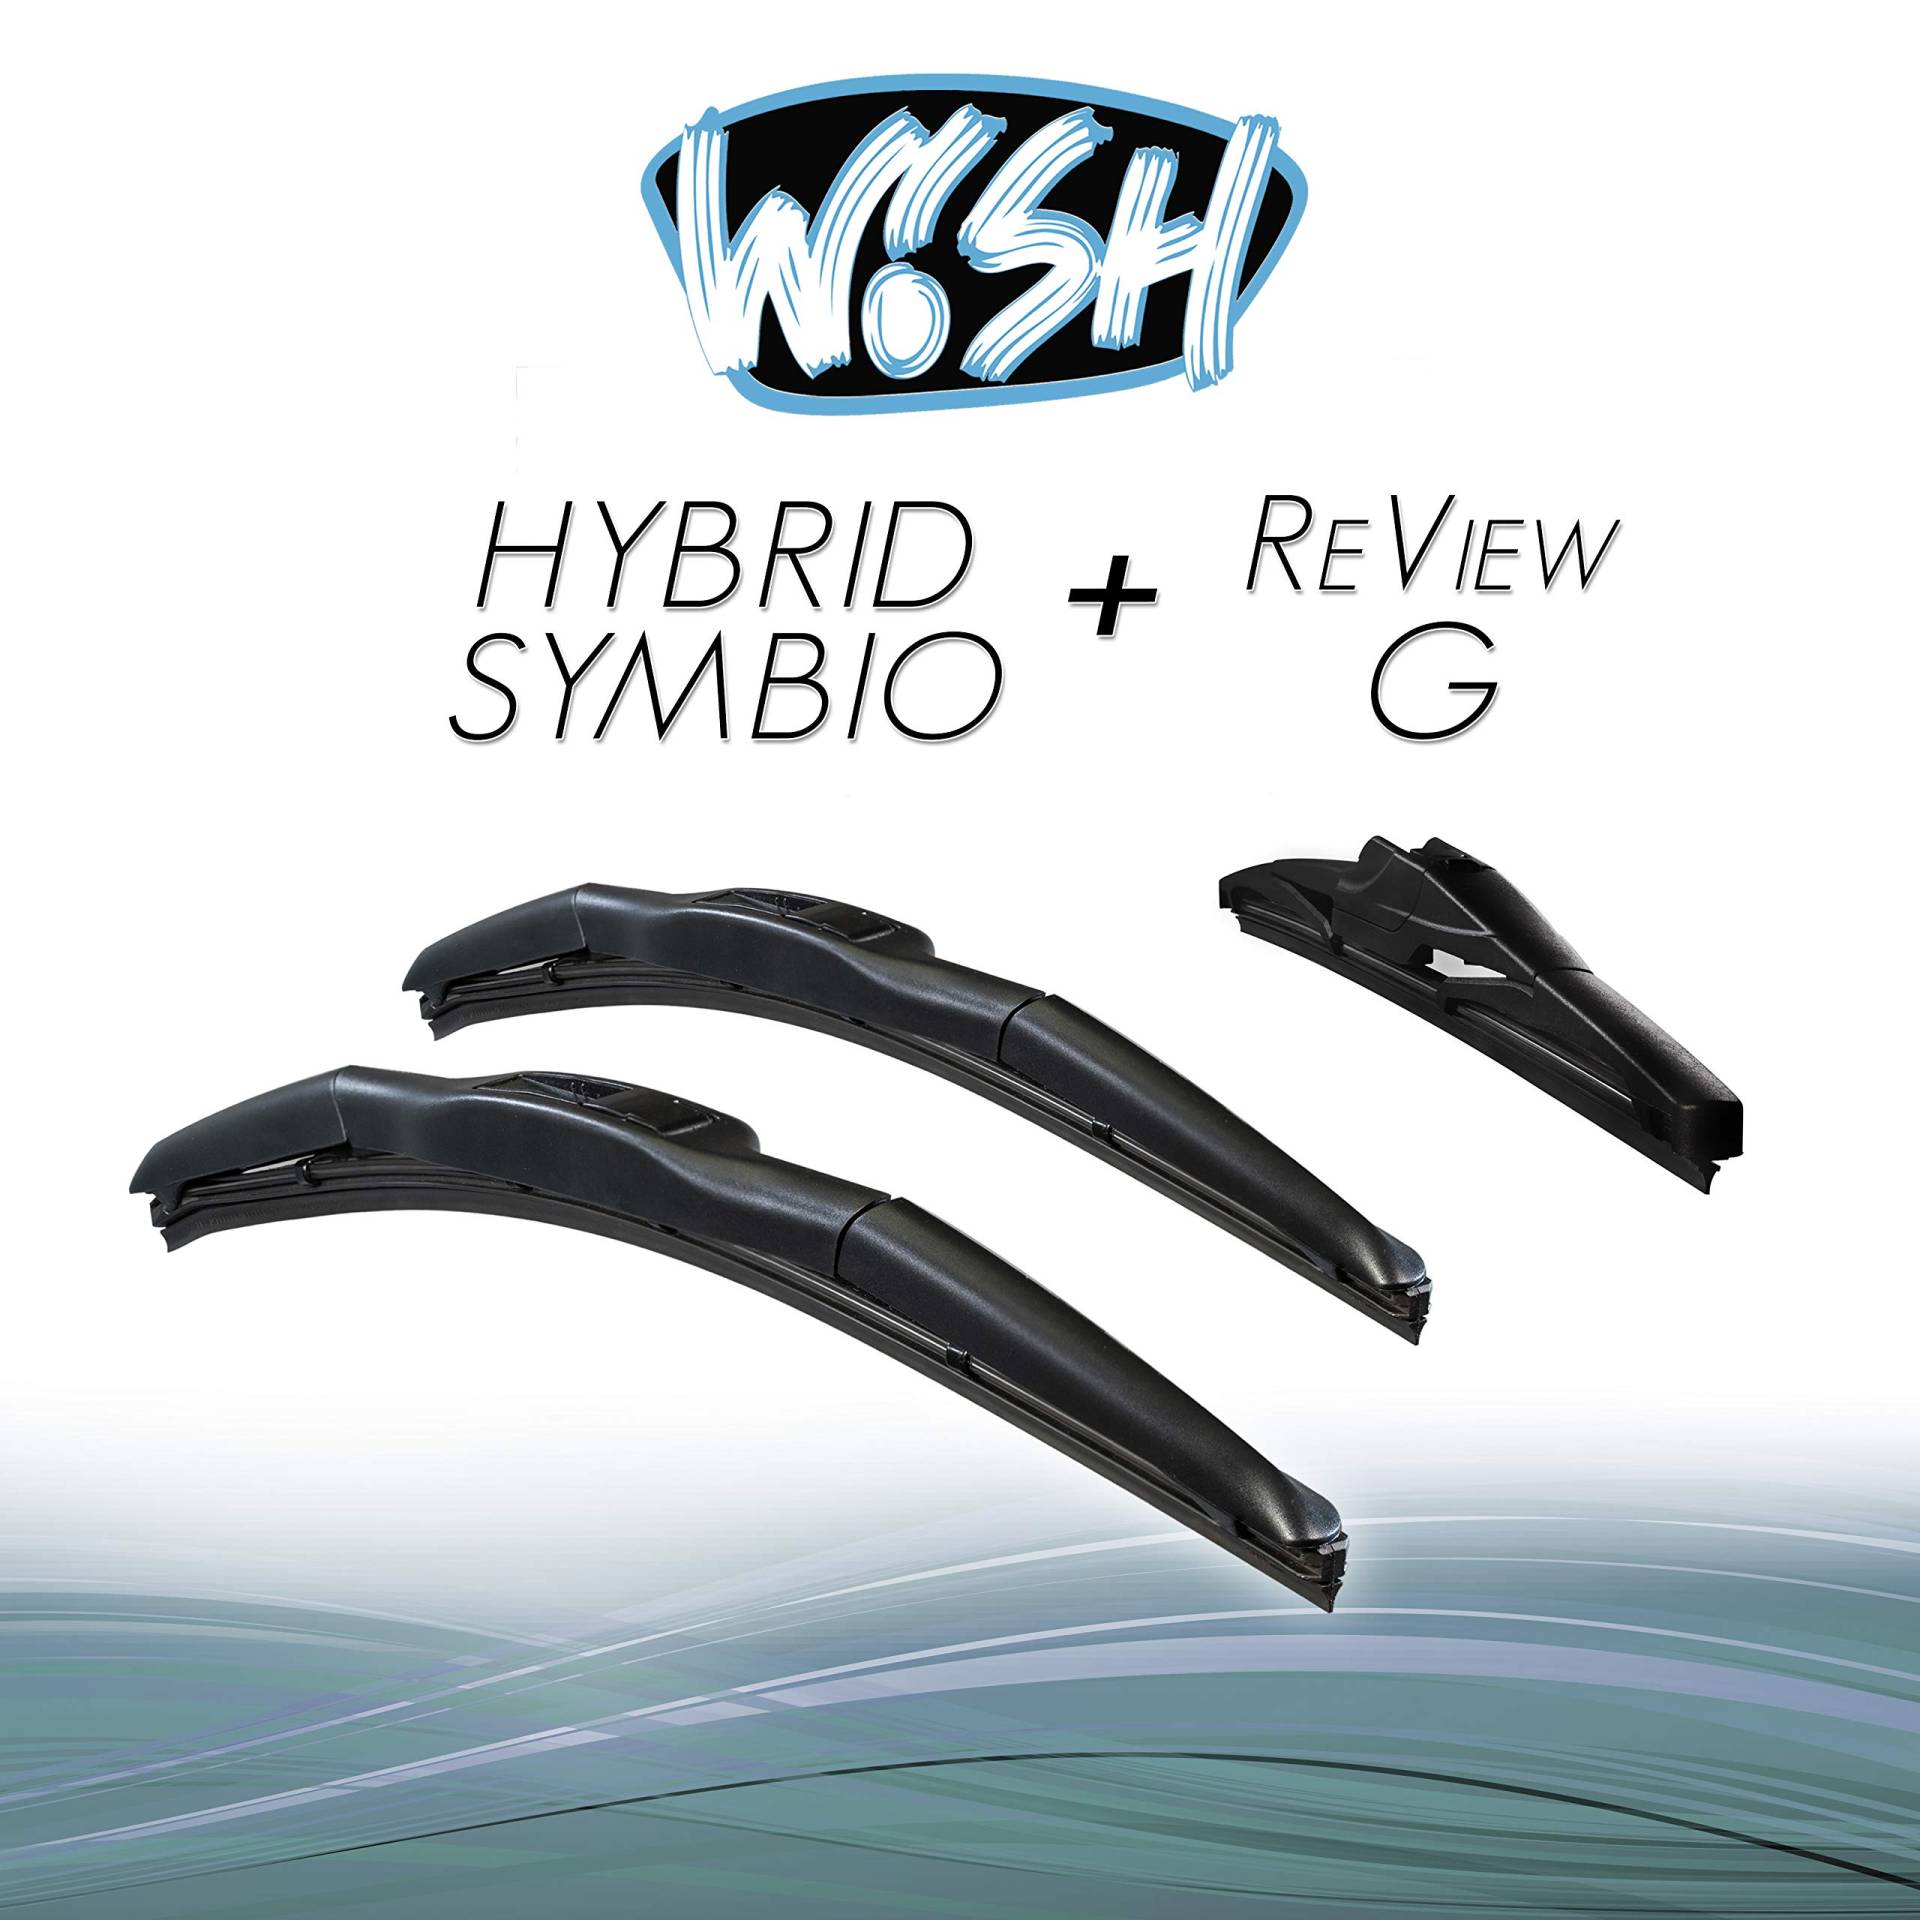 Wish® Hybrid Symbio Satz Front + Heck Scheibenwischer Länge: 21" 530mm / 19" 480mm / 11" 280mm Wischblätter Vorne und Hinten Hybrid-Scheibenwischer + Review G HS21.19.11RG von Wish